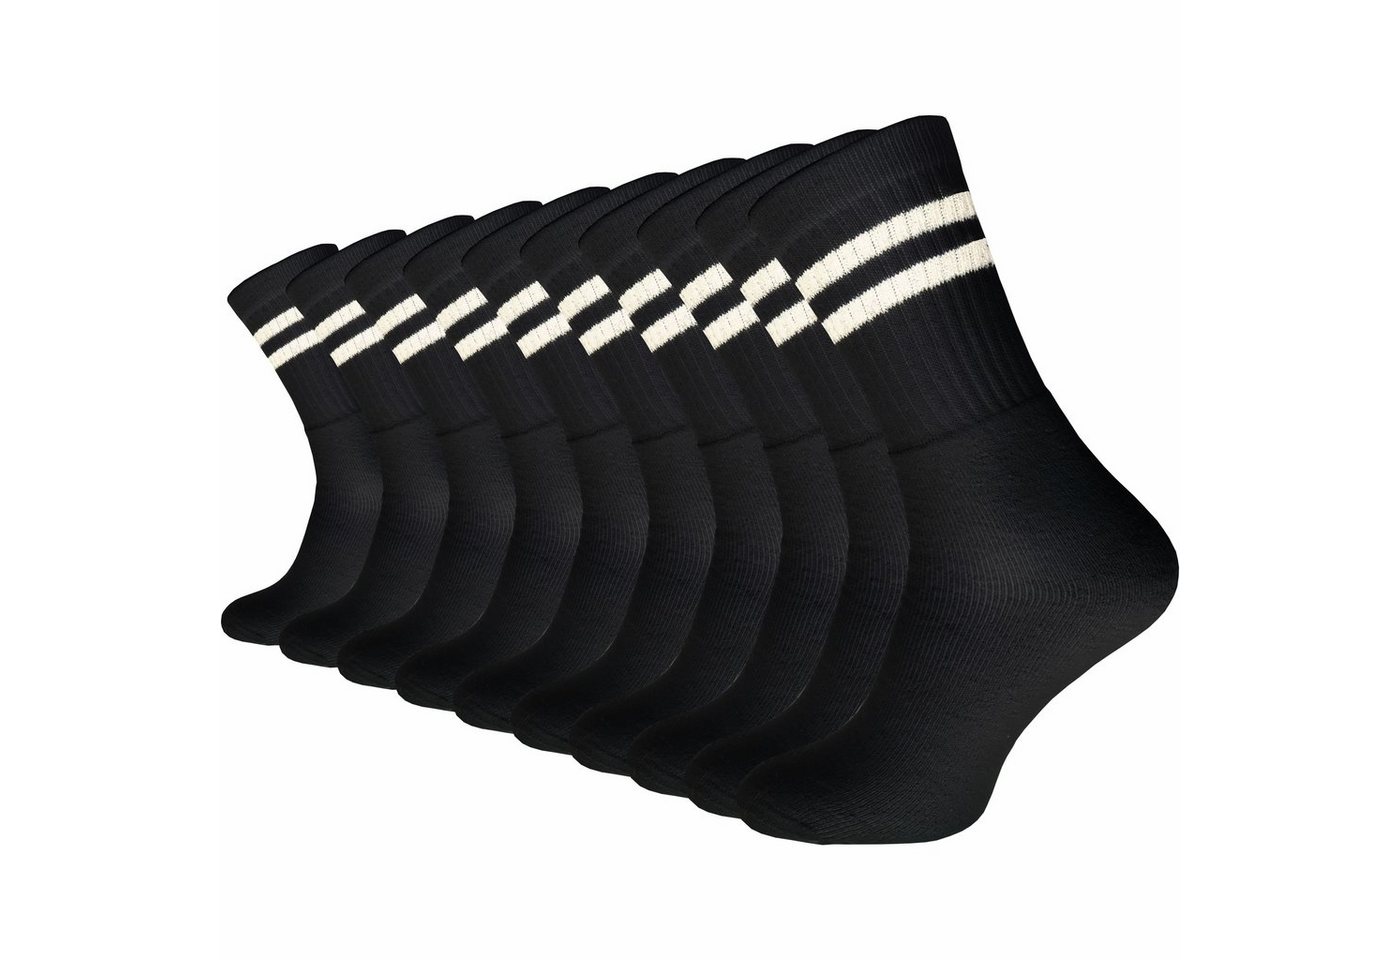 GAWILO Tennissocken für Damen & Herren in schwarz, weiß & grau - Sportsocken aus Baumwolle (10 Paar) Extra langlebig dank verstärktem Frotteefuß - u.a. in 39-42 und 43-46 von GAWILO